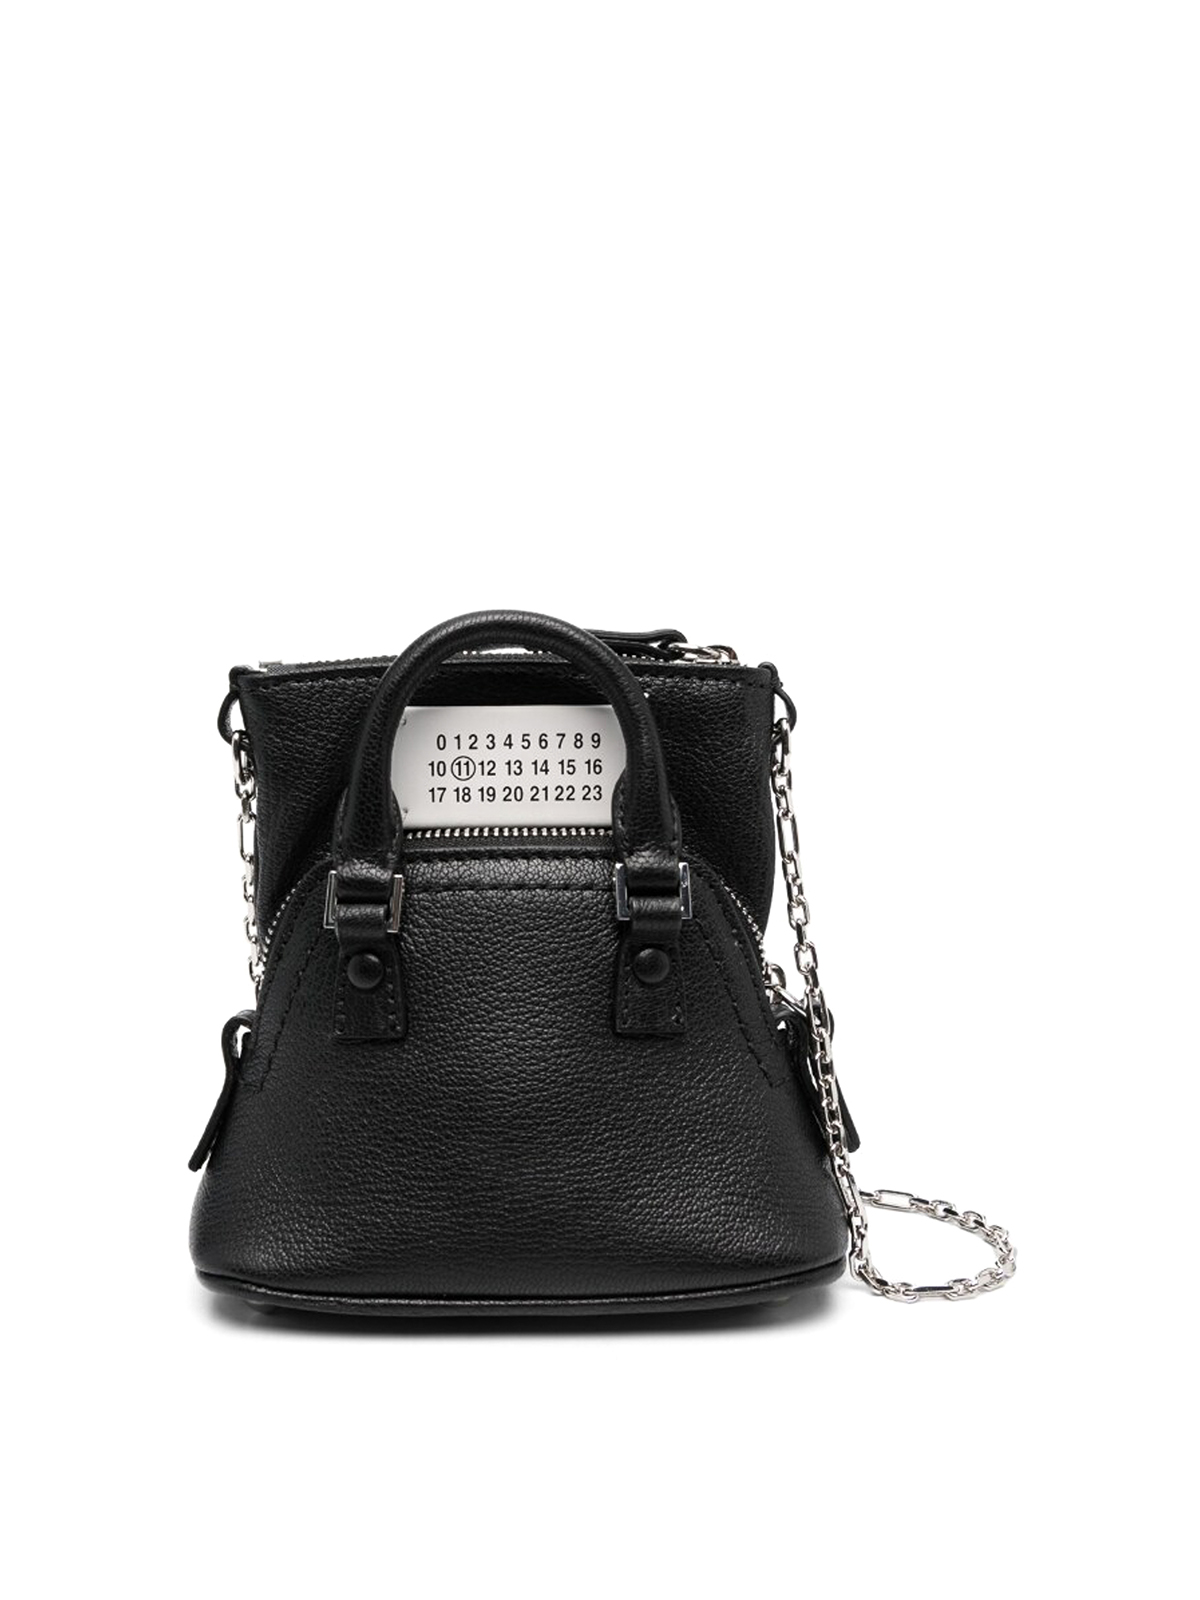 MAISON MARGIELA - 5ac Leather Mini Bag